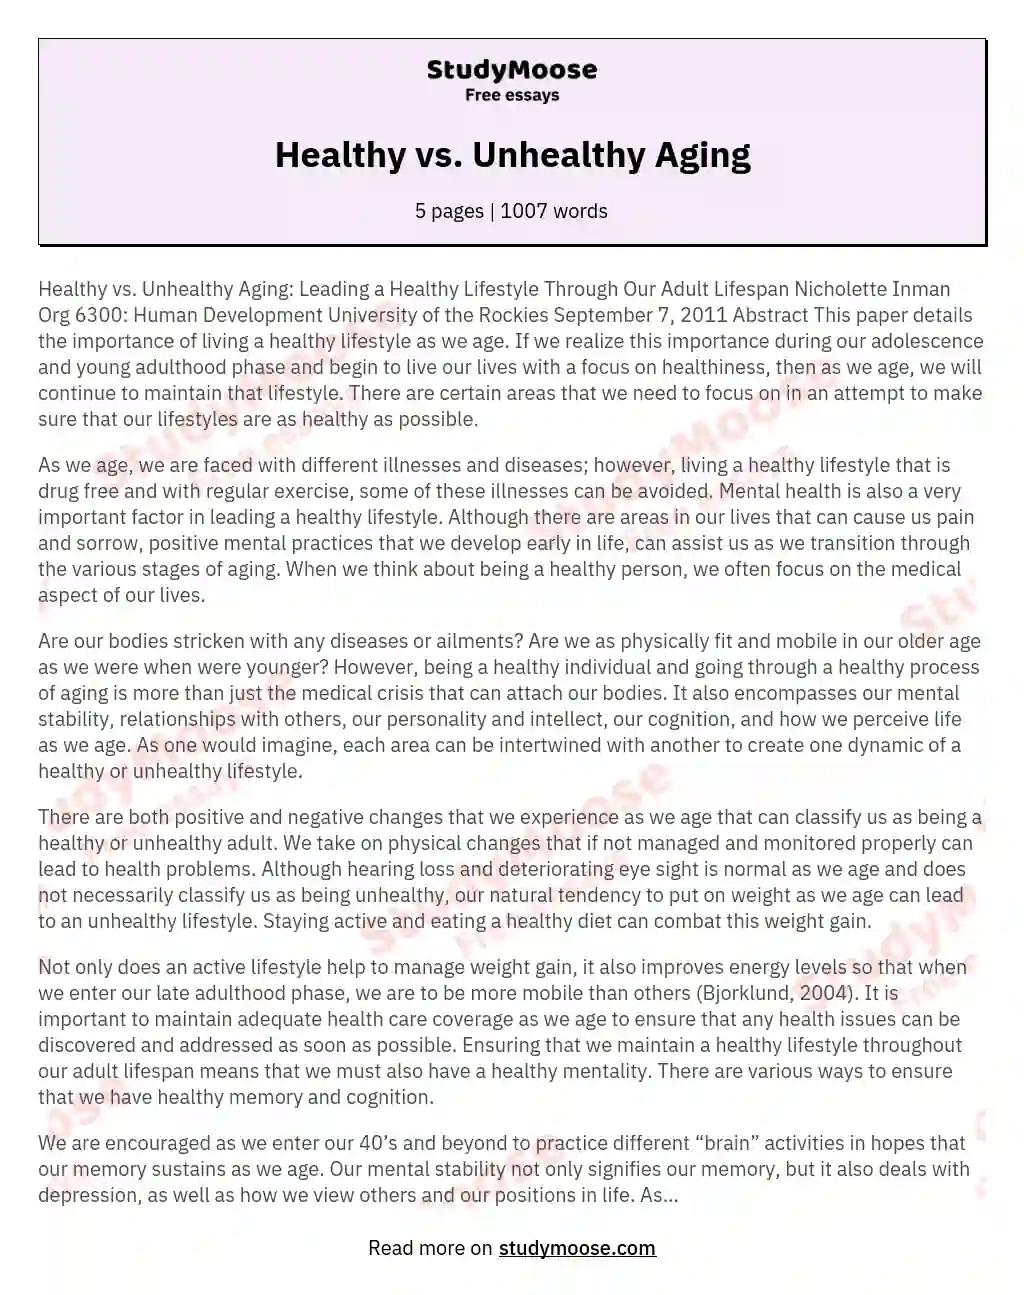 Healthy vs. Unhealthy Aging essay